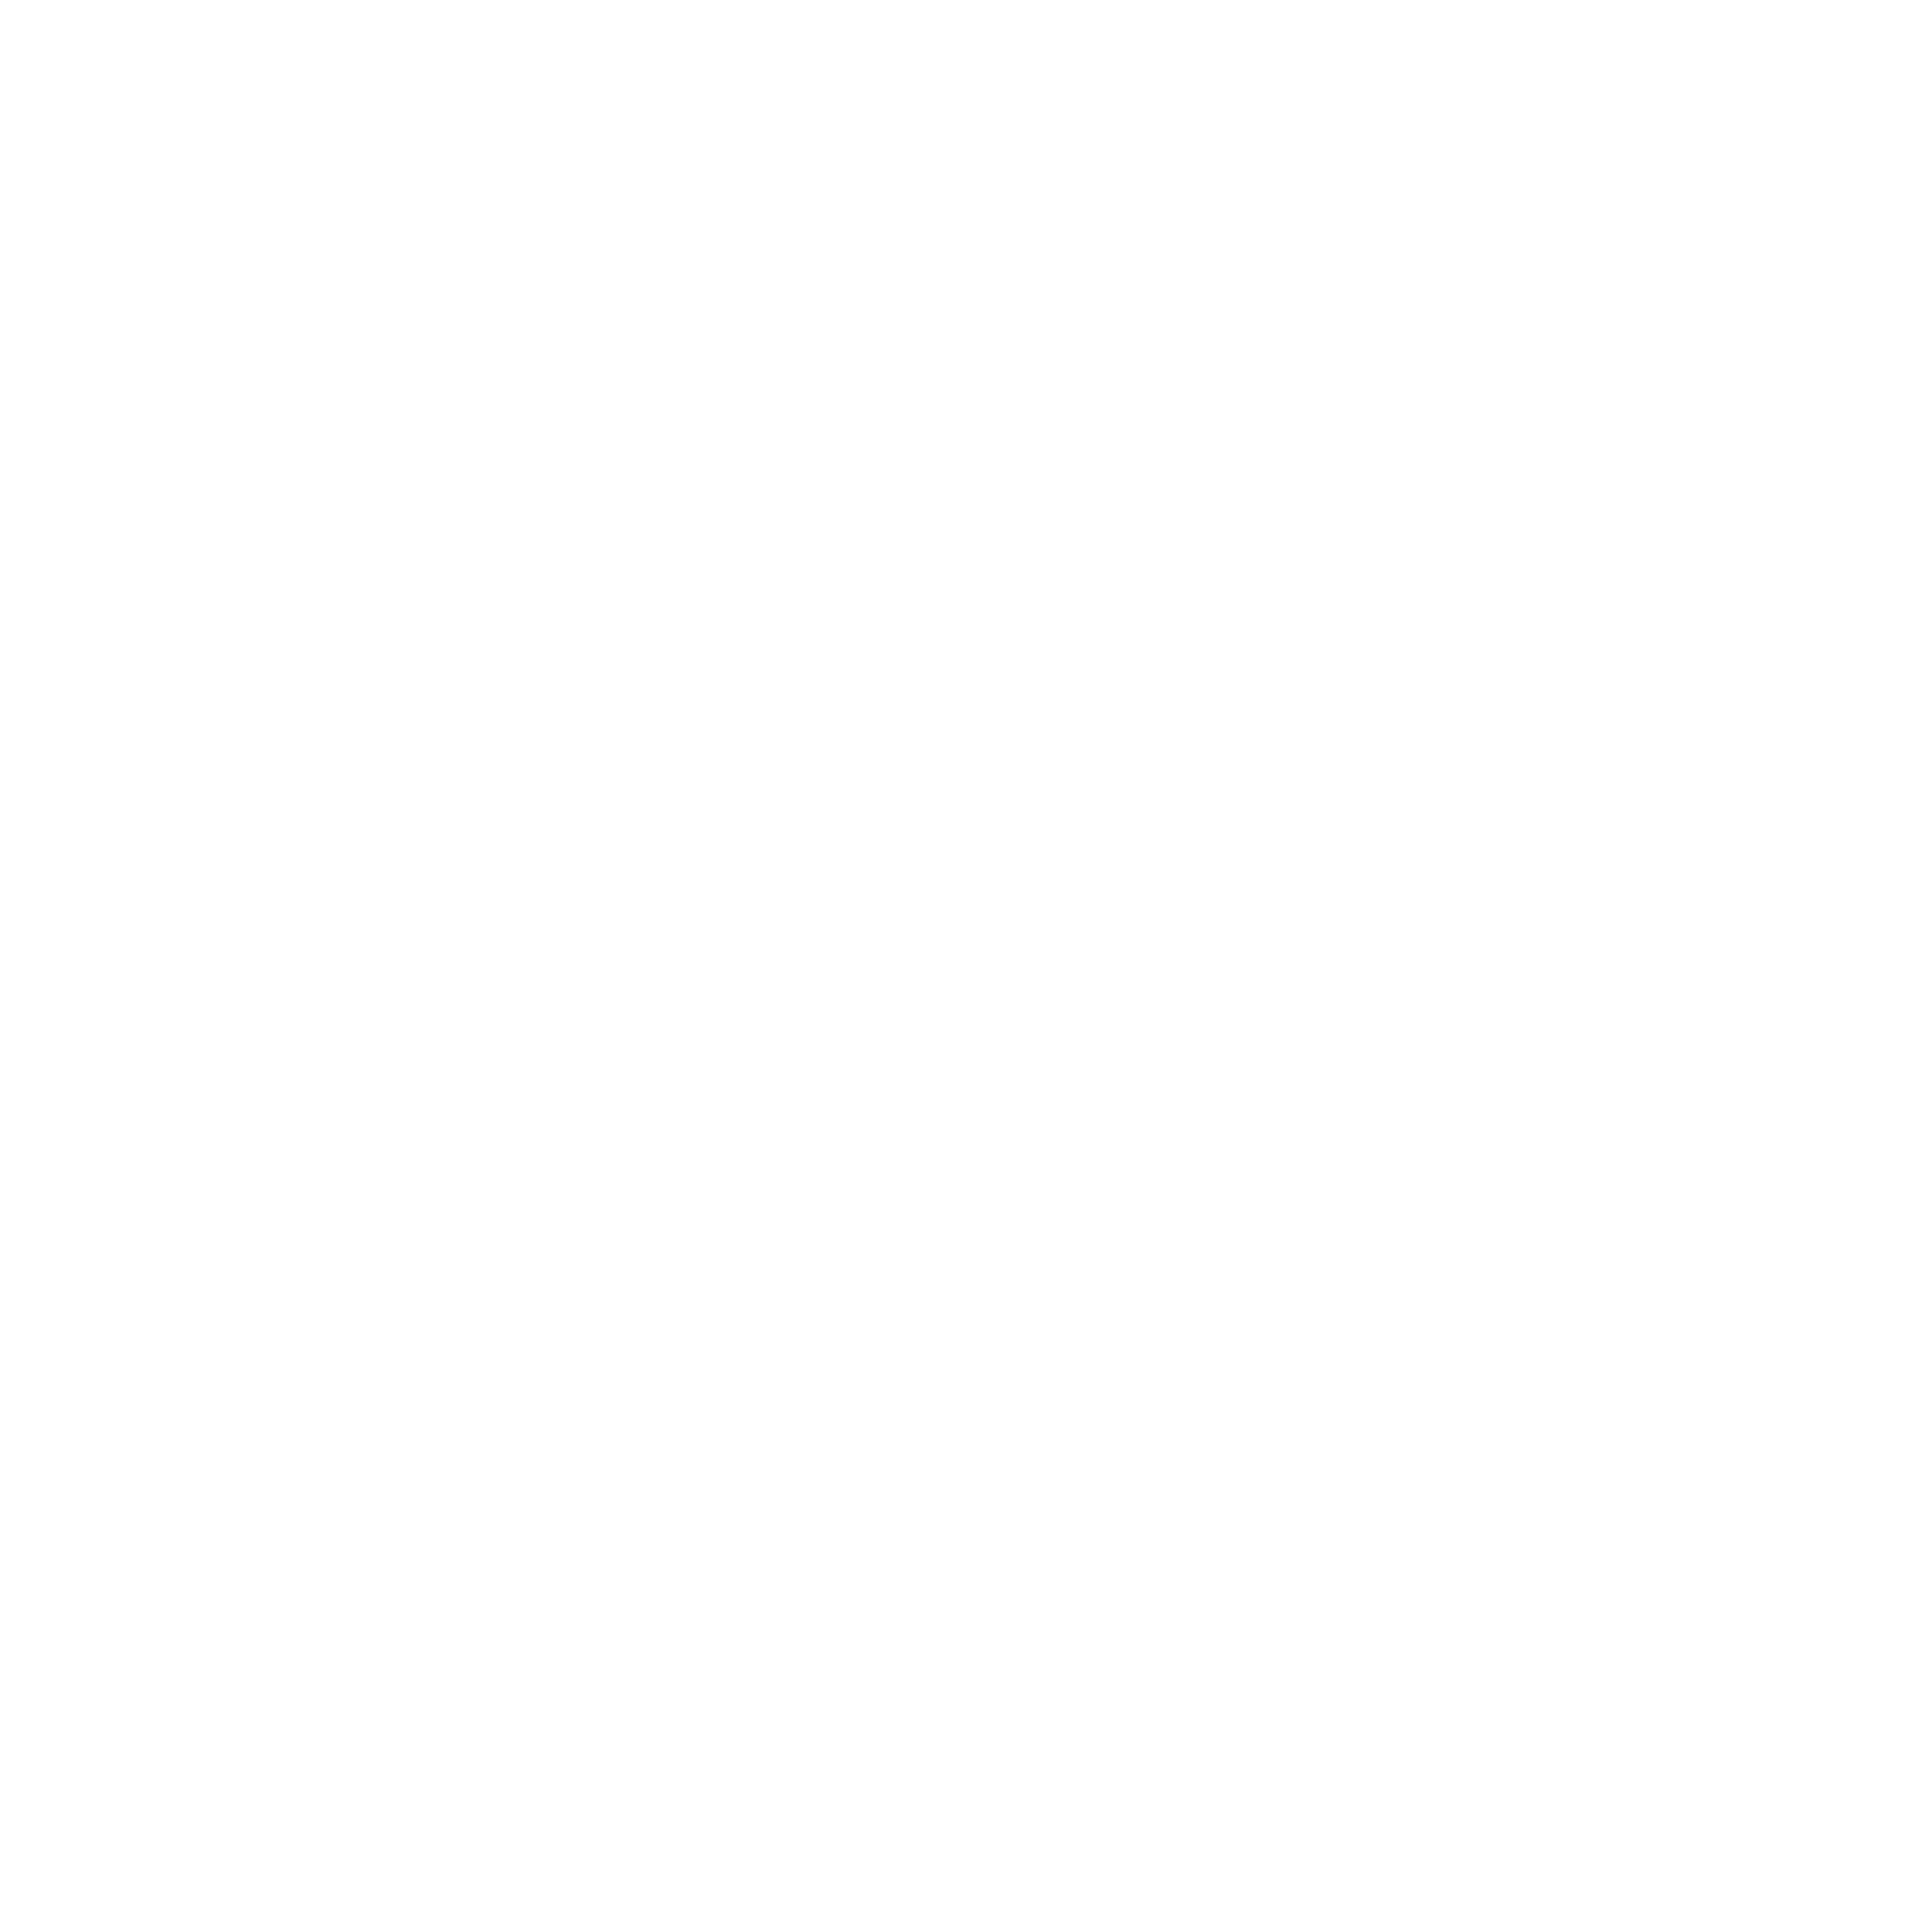 Zero Plastic